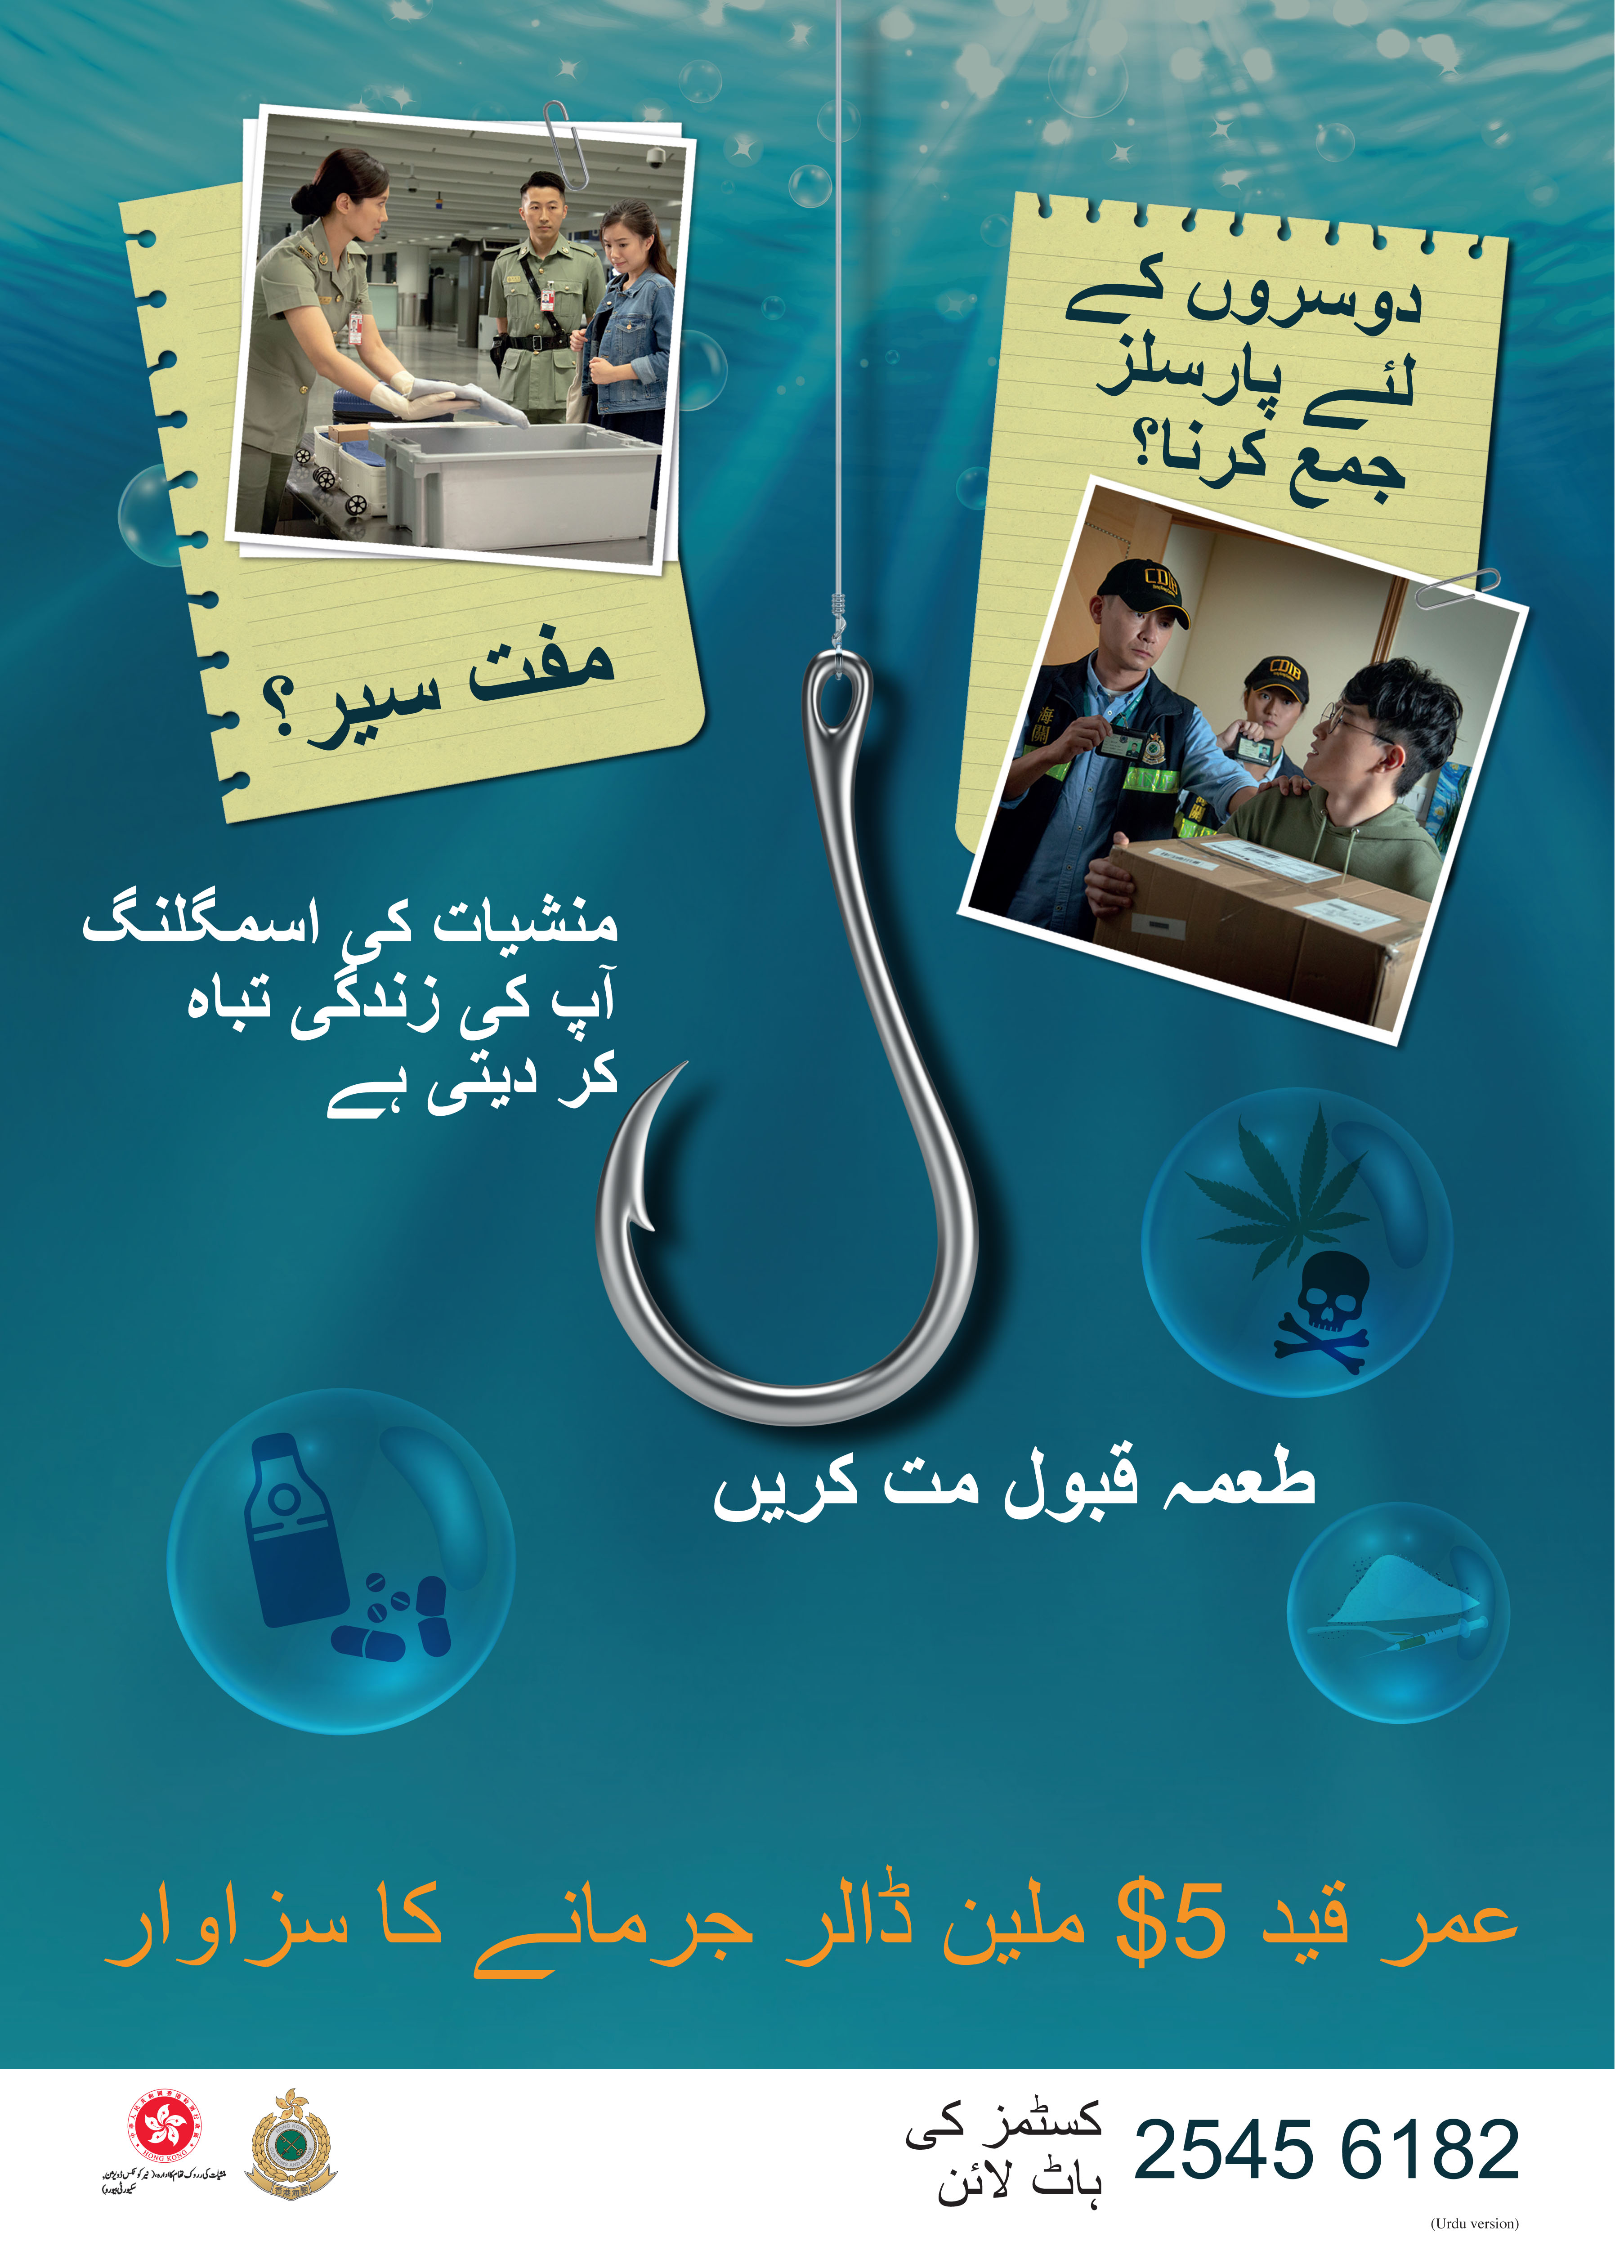 禁毒海報「販毒誘害，切勿上釣」－巴基斯坦文版本